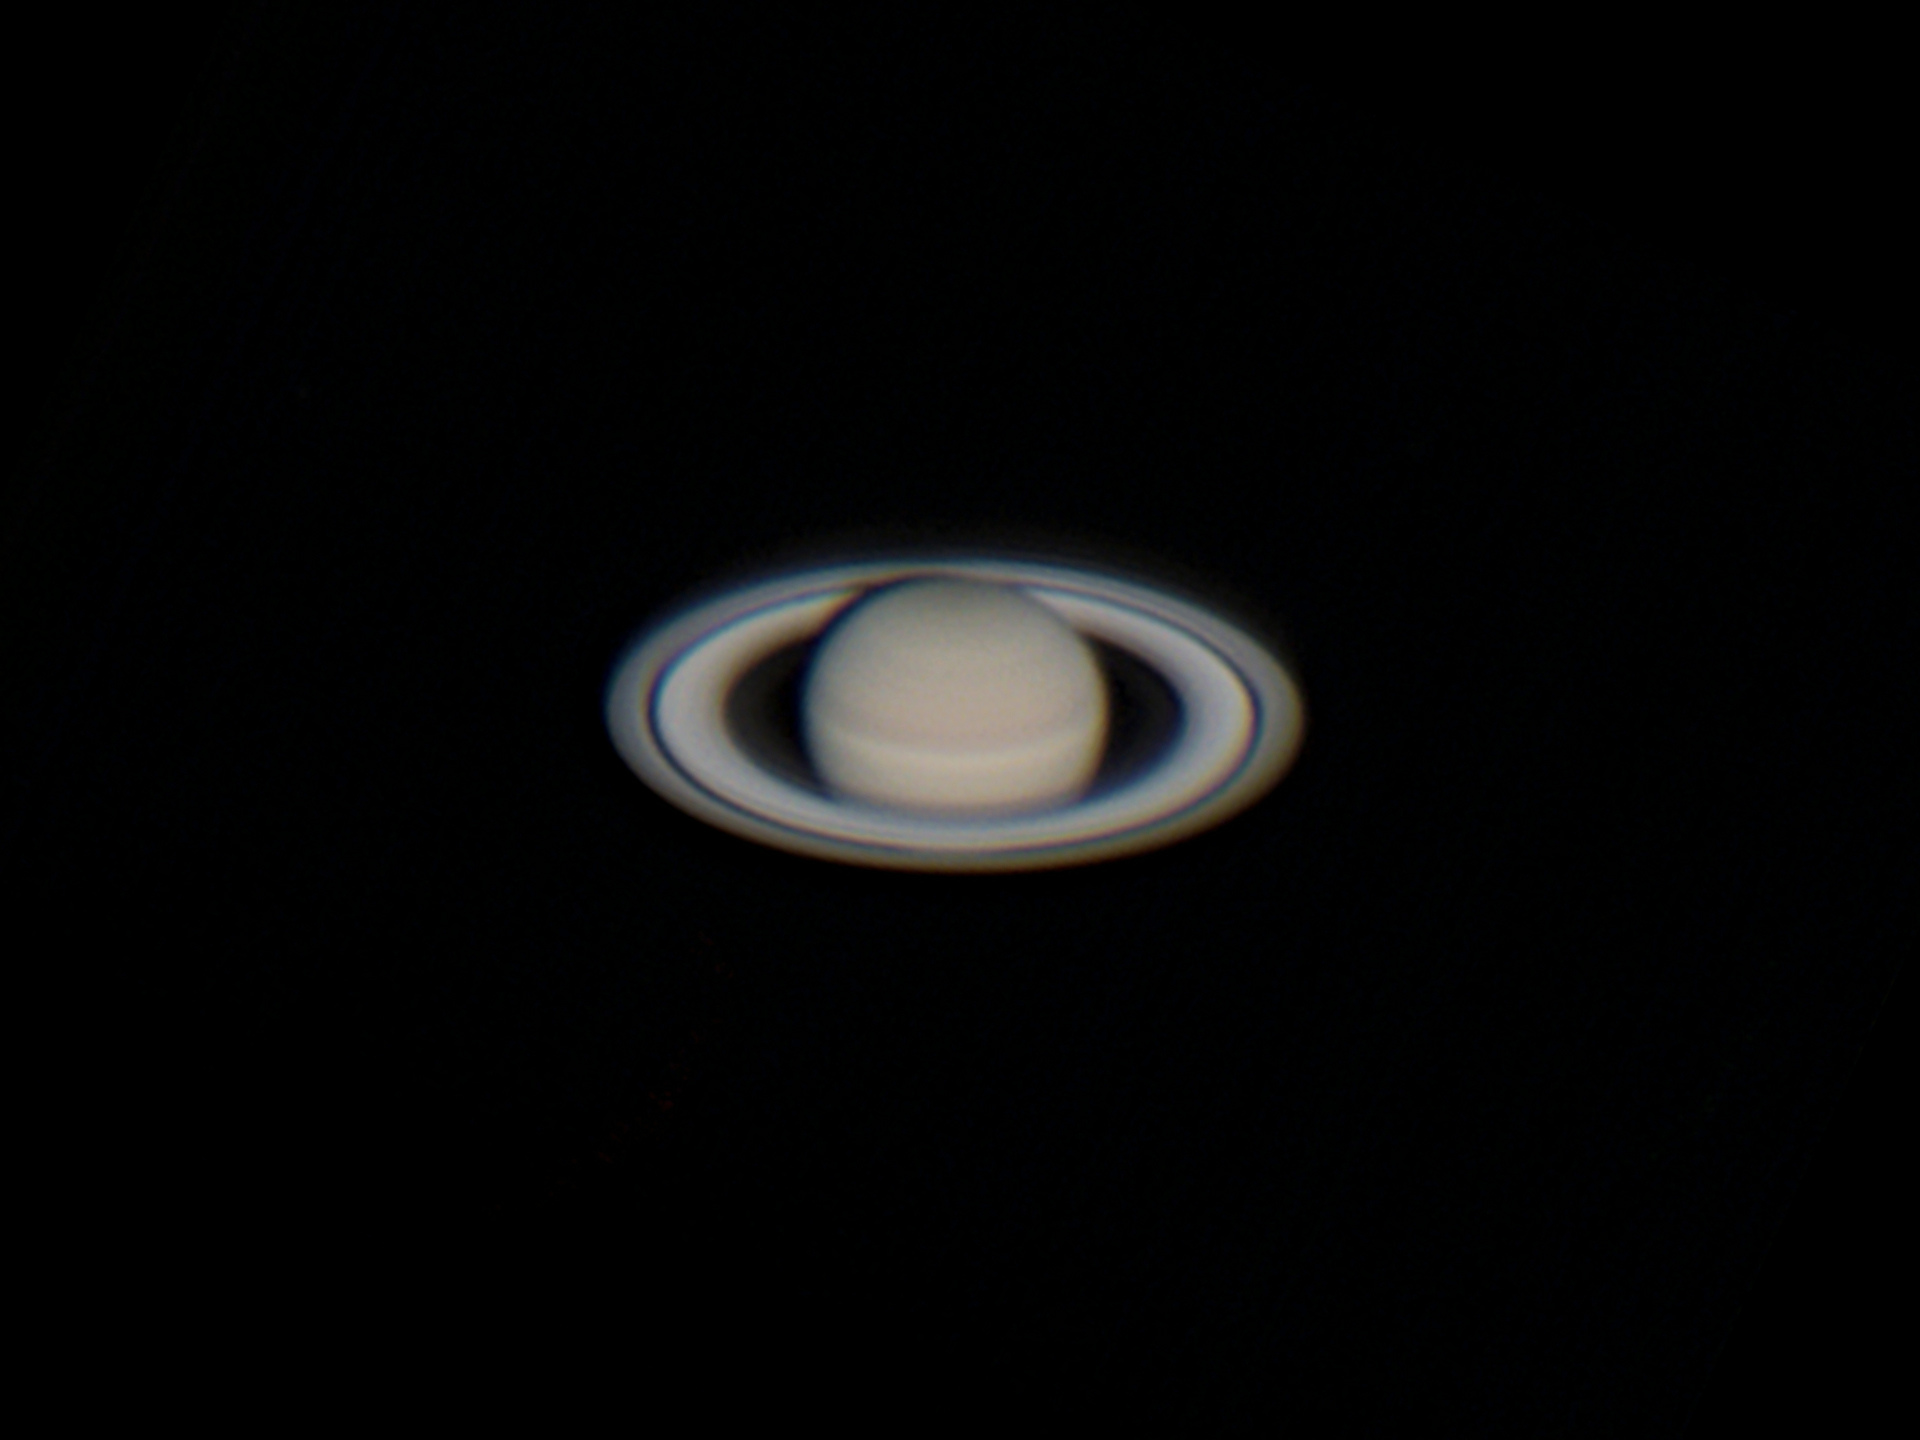 Saturne 20180815 C11 ASI120MC.jpg